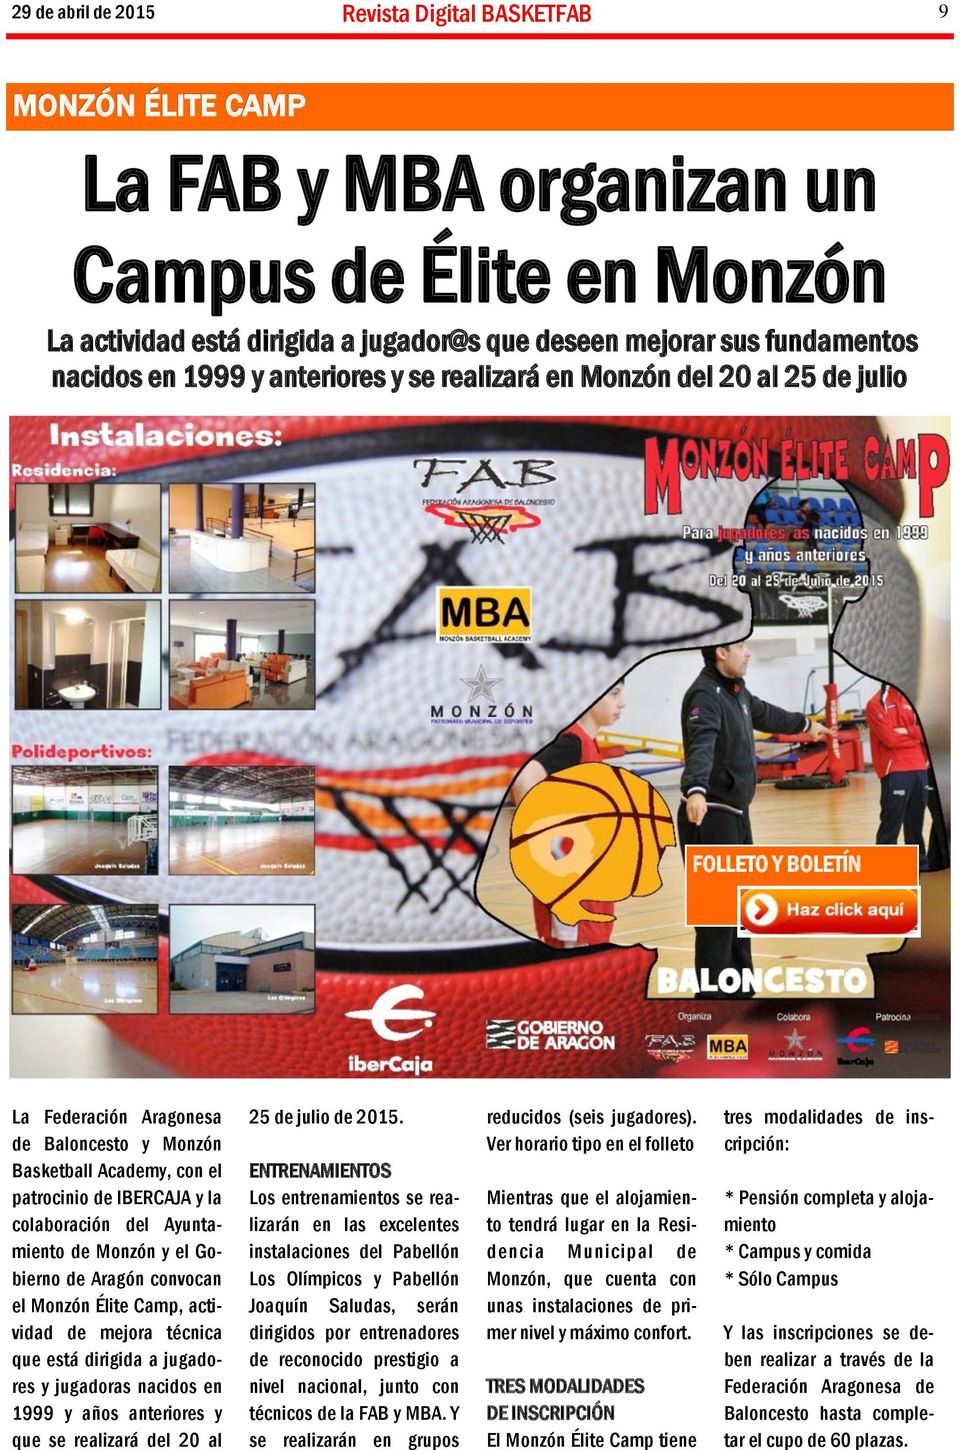 Aragón convocan el Monzón Élite Camp, actividad de mejora técnica que está dirigida a jugadores y jugadoras nacidos en 1999 y años anteriores y que se realizará del 20 al 25 de julio de 2015.